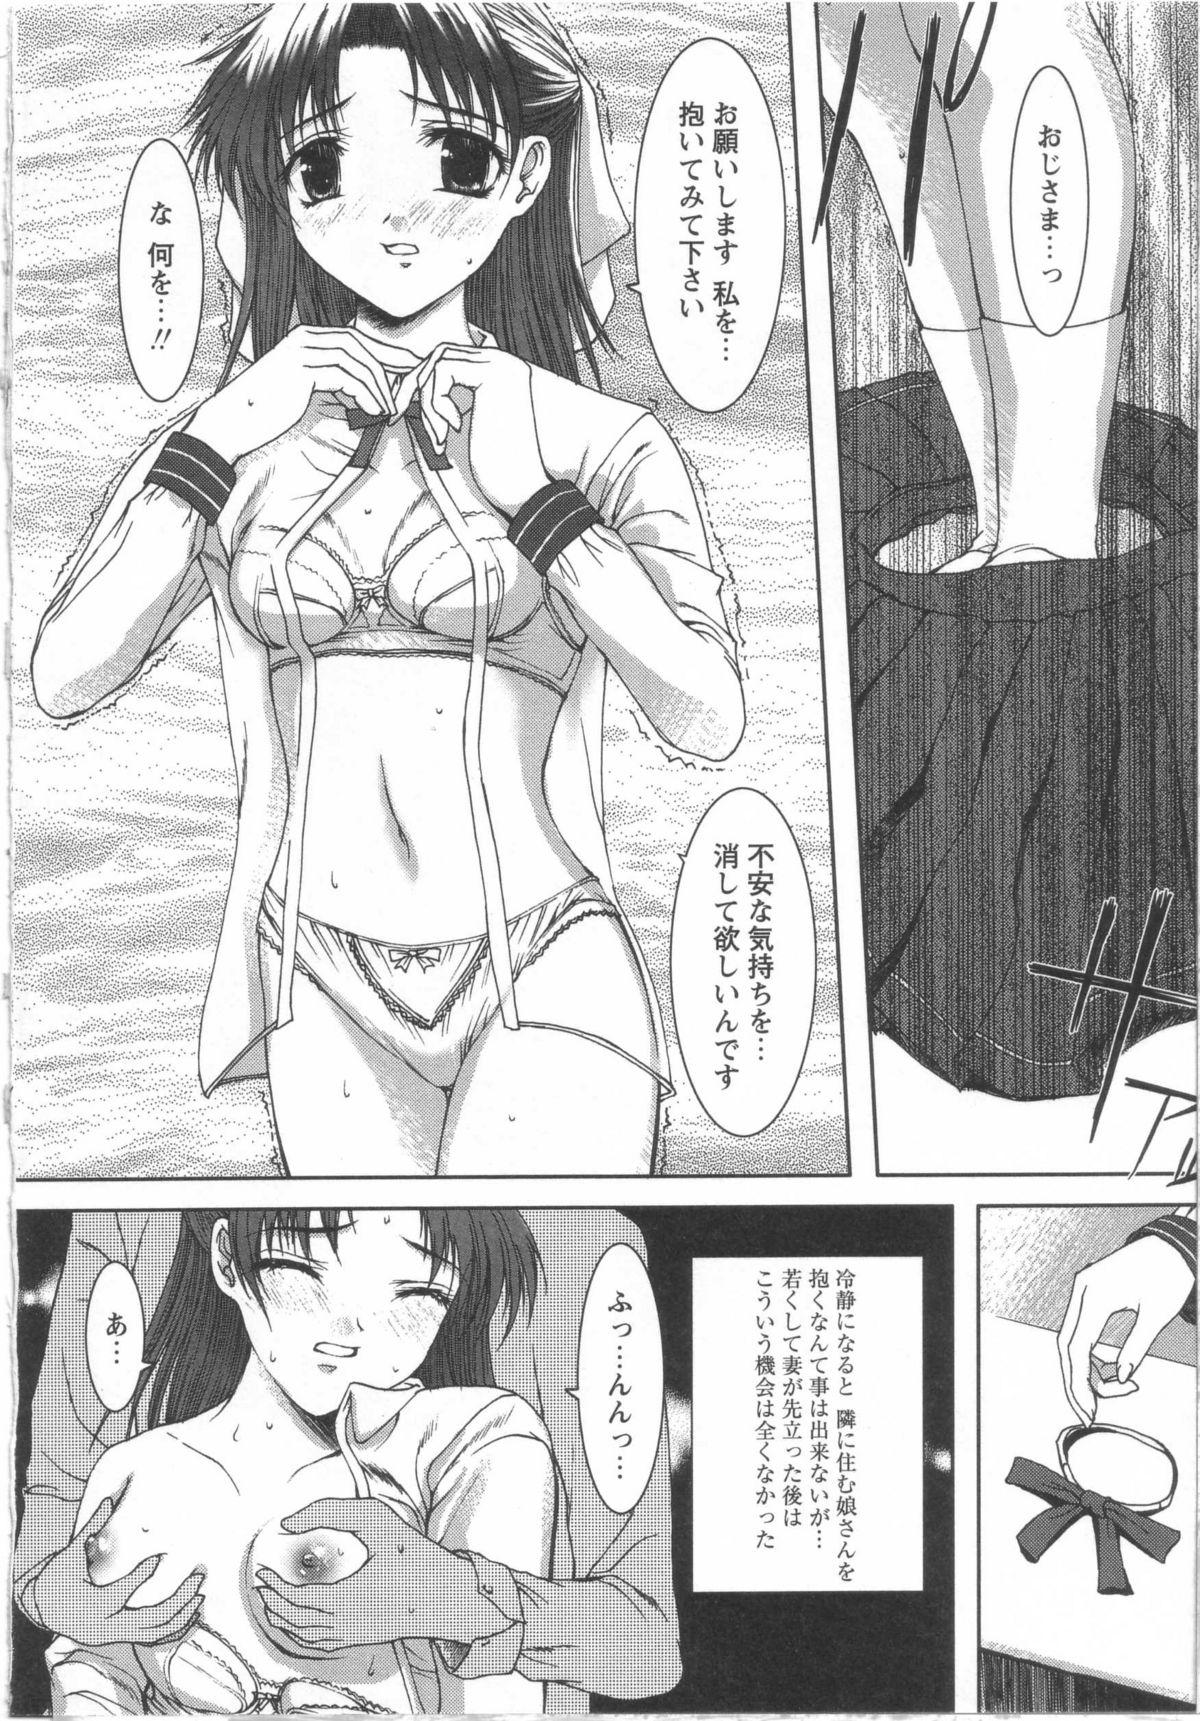 Nuru Seifuku to Shojo | Uniform and Virgin Perfect Girl Porn - Page 10